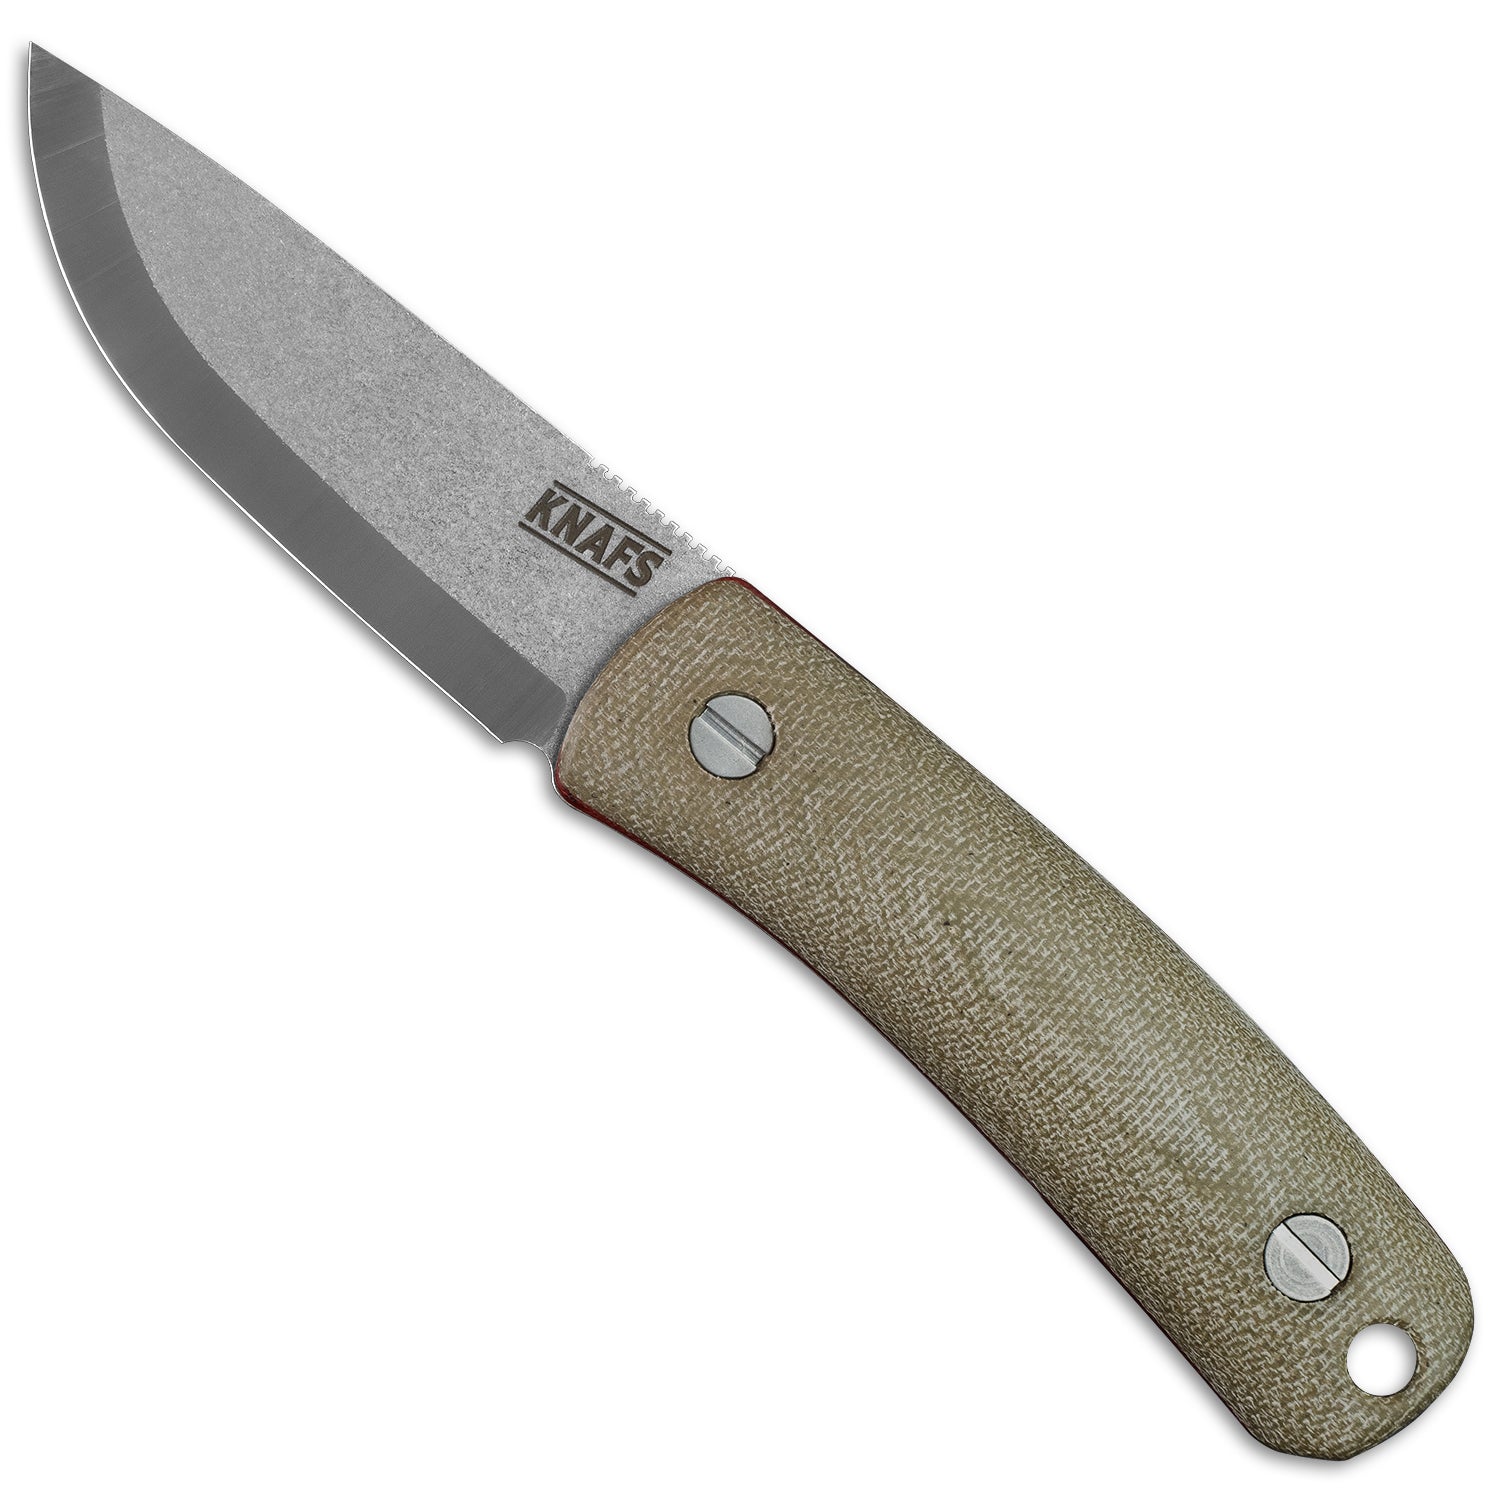 Lulu - Fixed Blade Knife - Striker Spine – Knafs